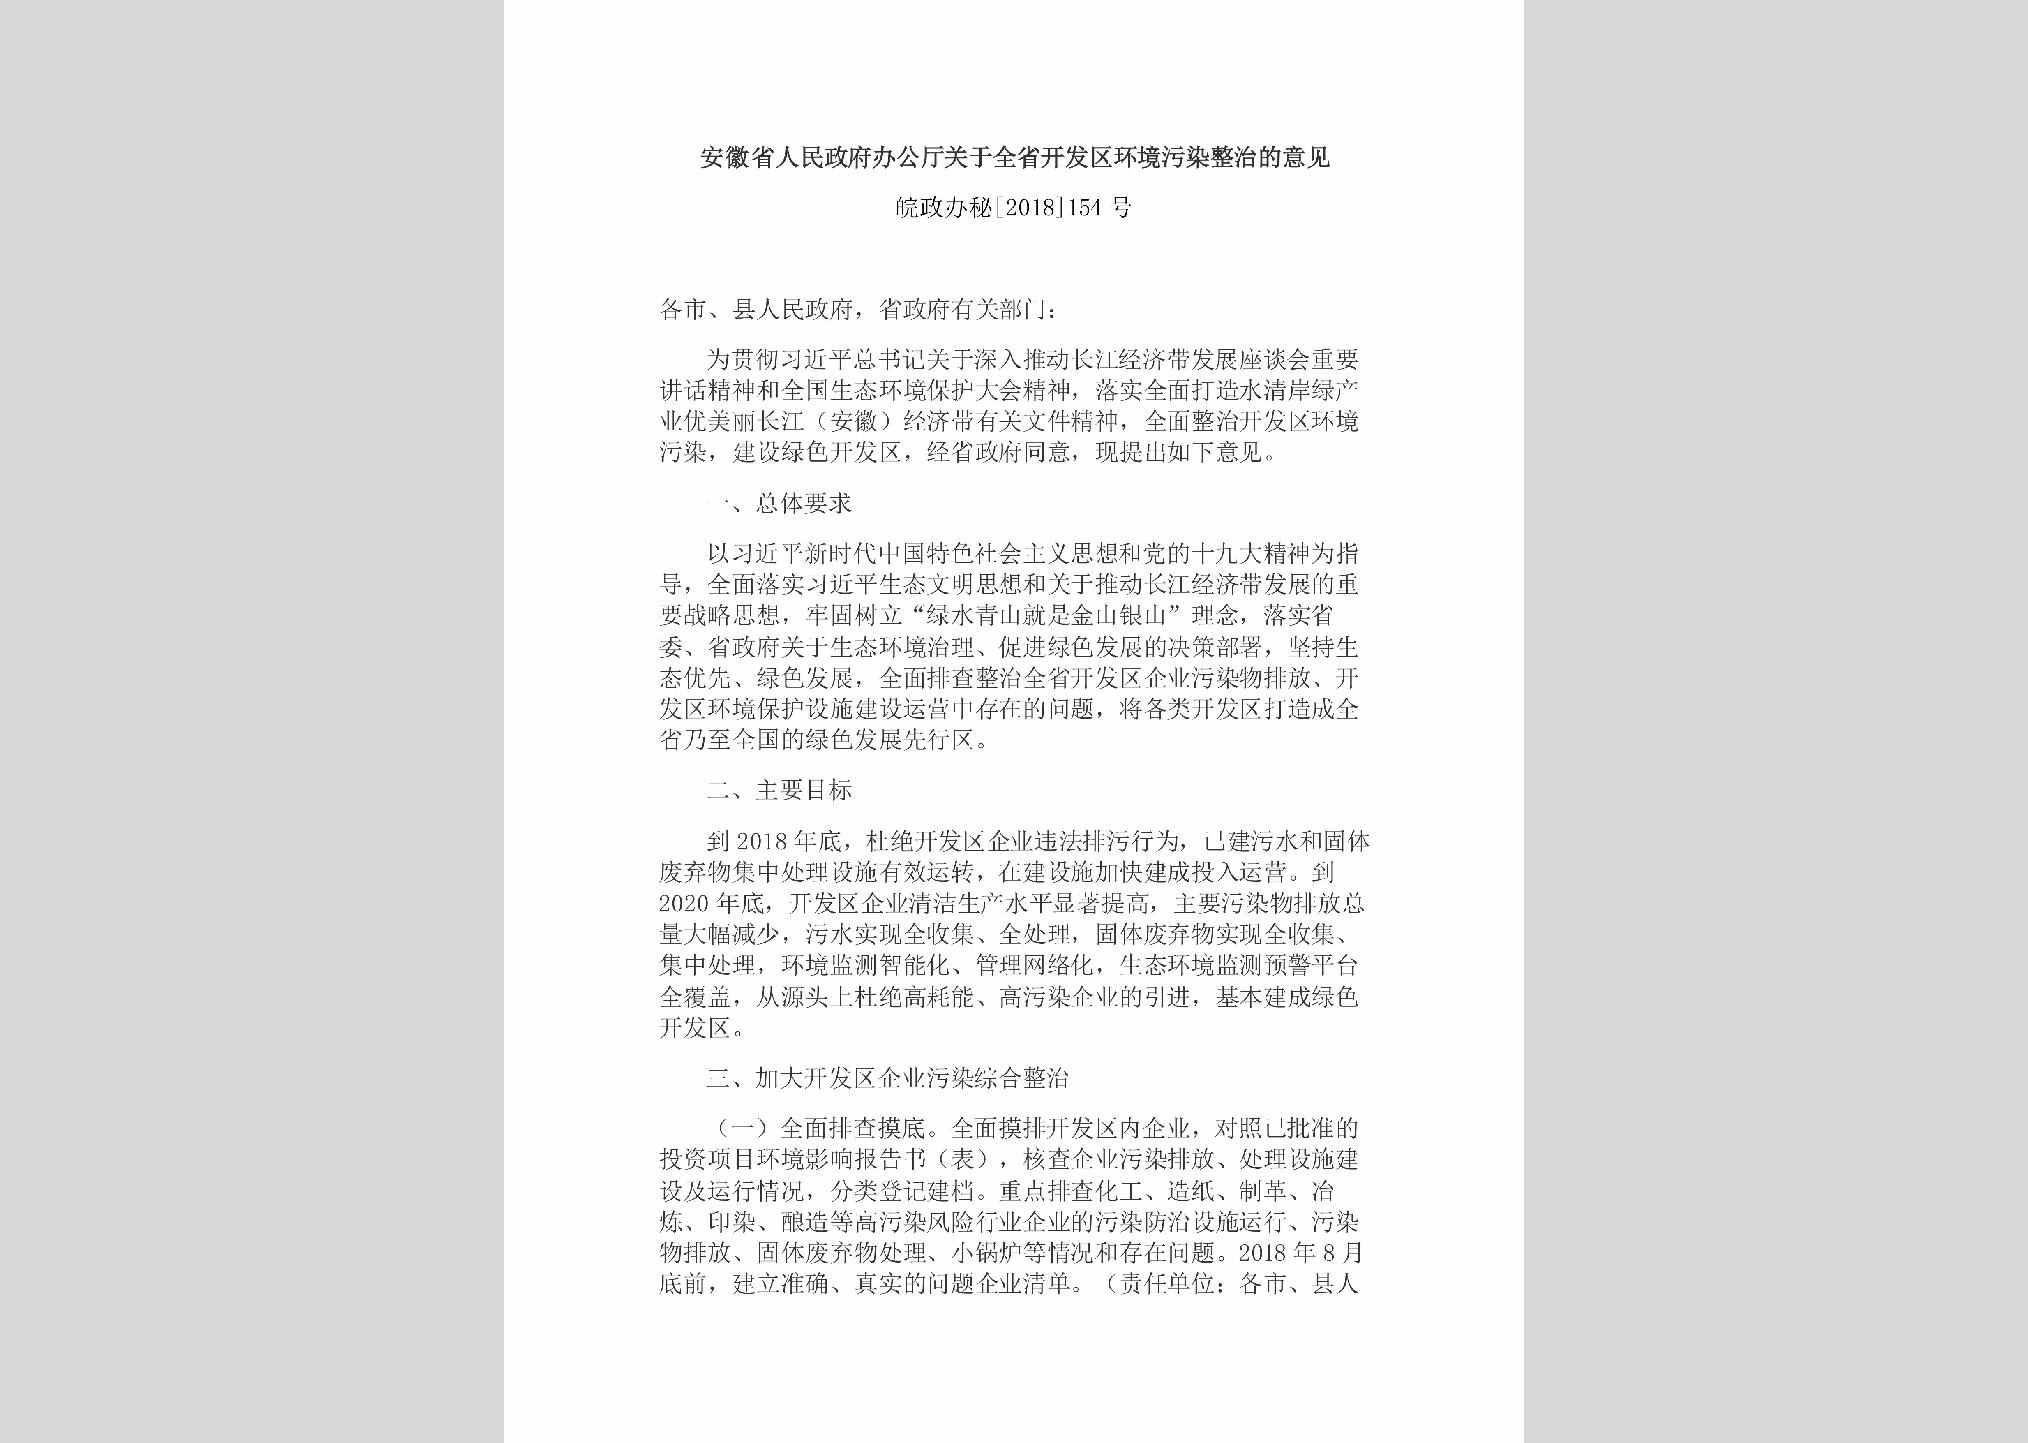 皖政办秘[2018]154号：安徽省人民政府办公厅关于全省开发区环境污染整治的意见